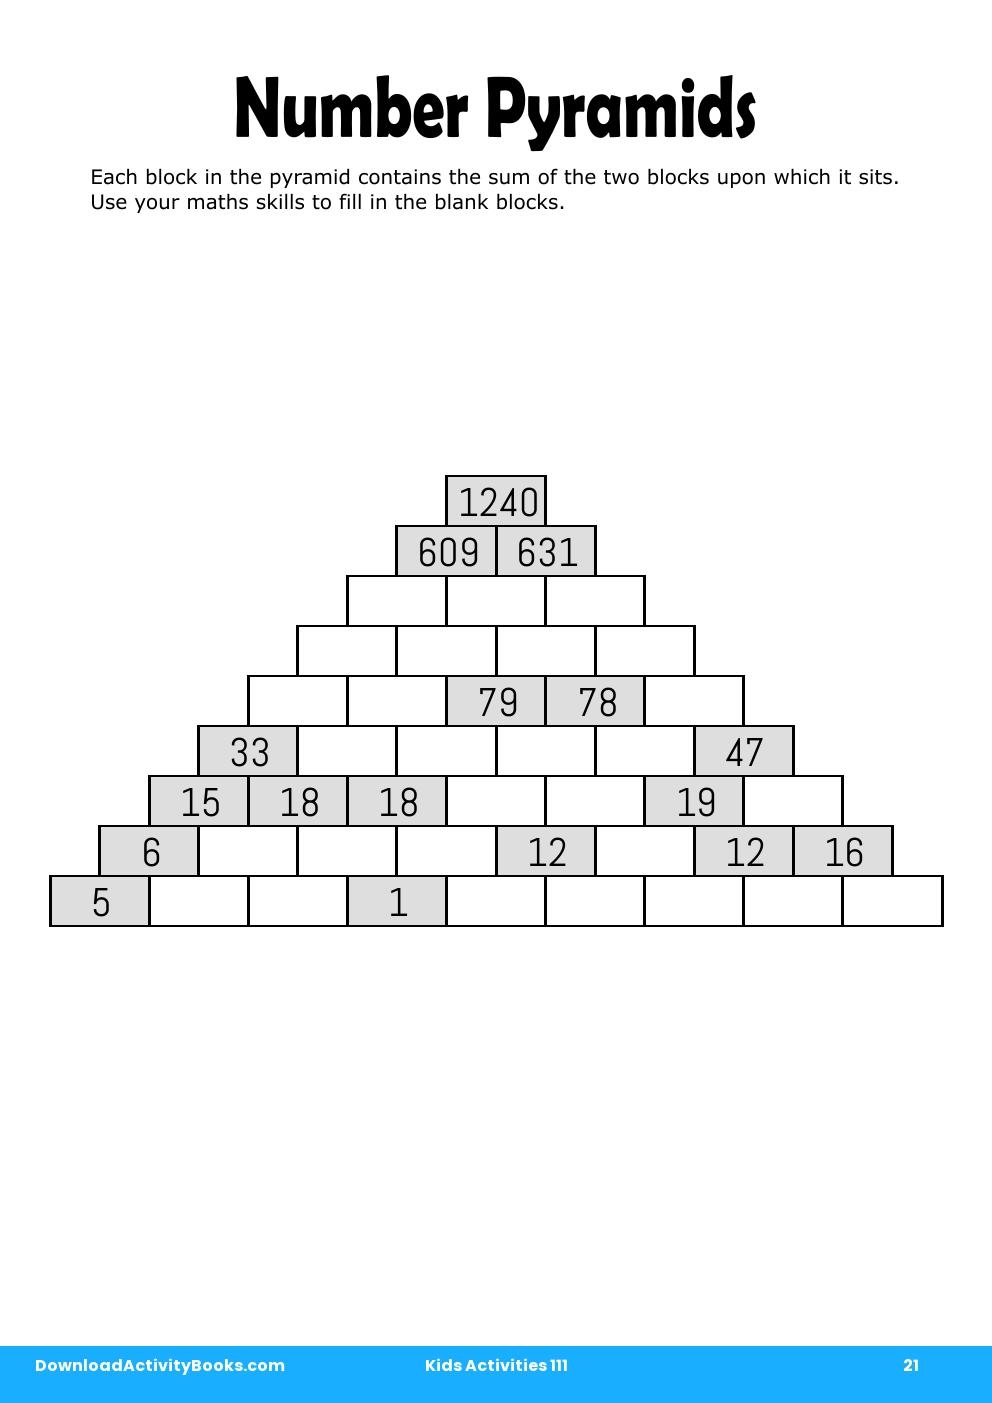 Number Pyramids in Kids Activities 111